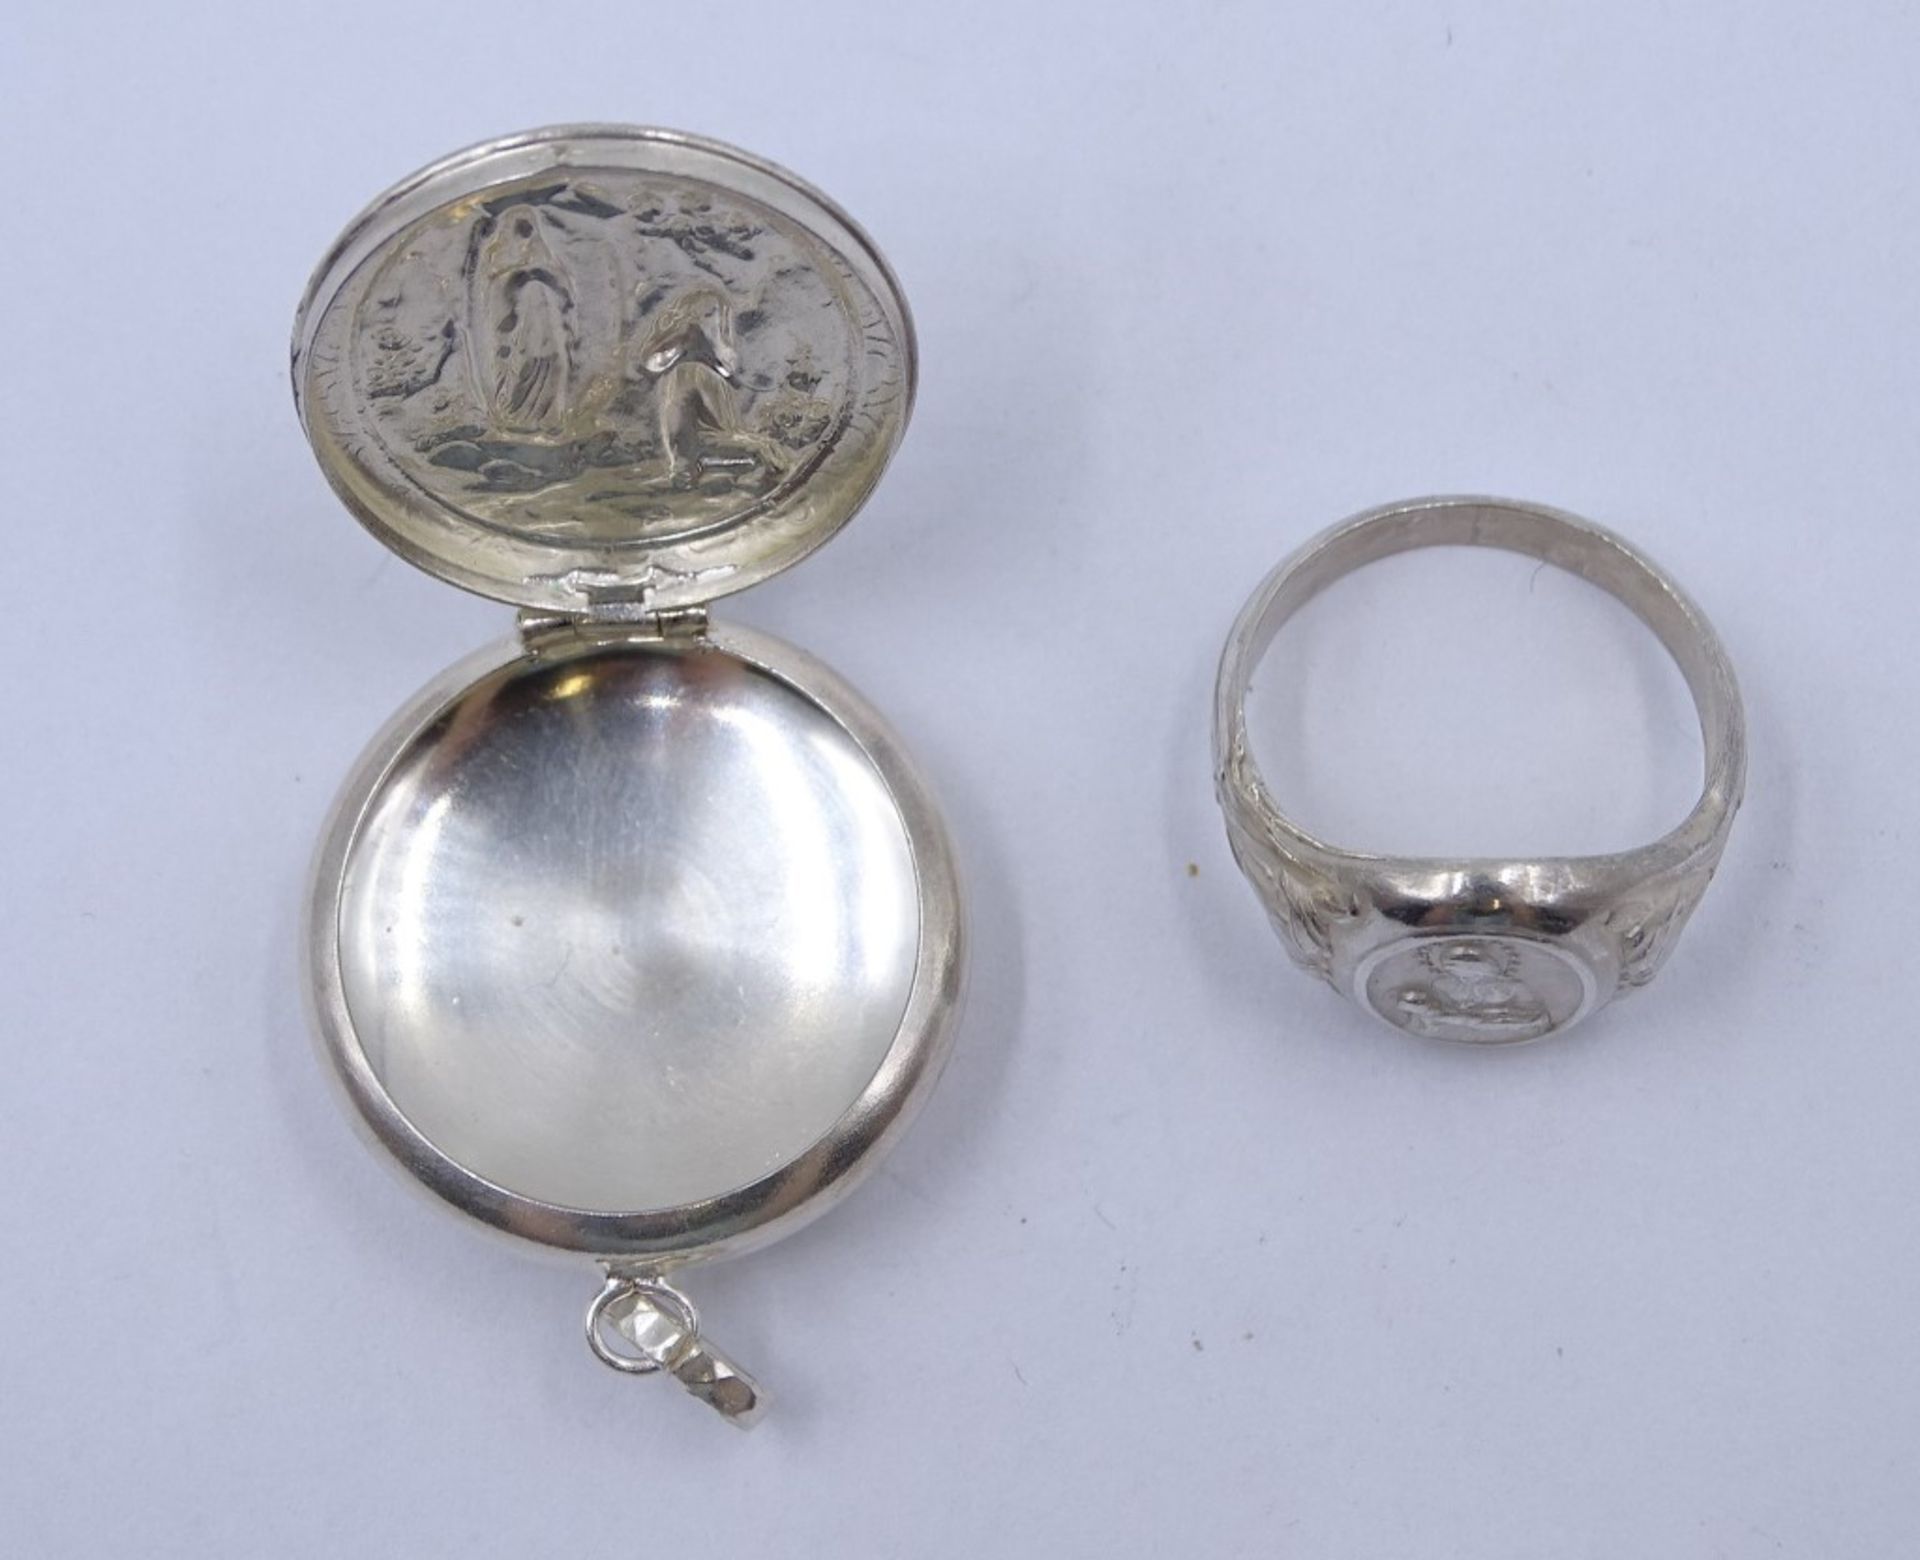 800er-Silberring und Medaillondöschen aus Metall mit Mariendarstellungen, Ring: 4,7 gr., RG 59, Ø M - Image 2 of 5